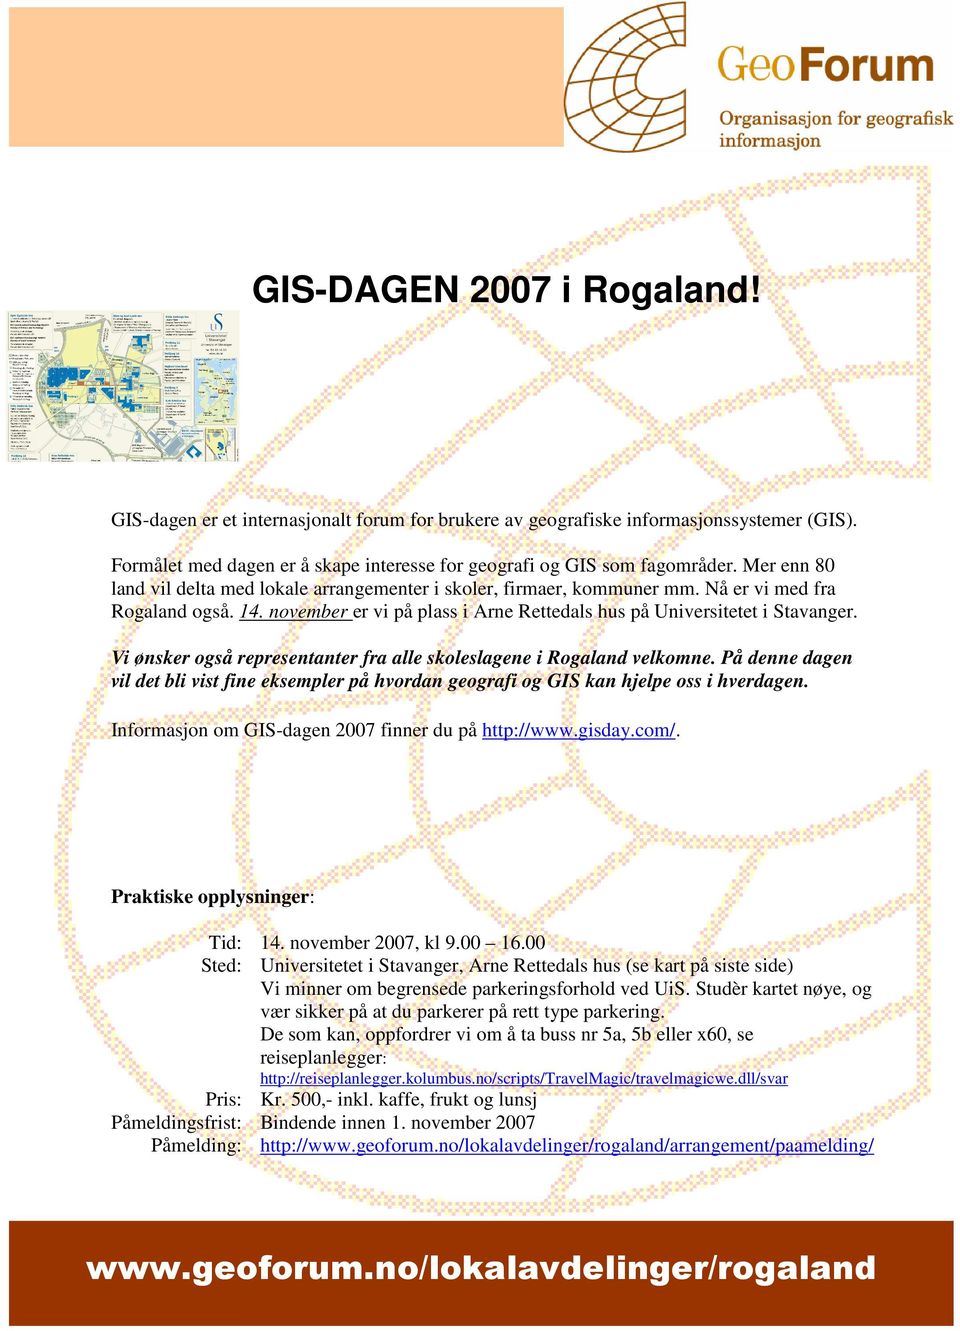 Vi ønsker også representanter fra alle skoleslagene i Rogaland velkomne. På denne dagen vil det bli vist fine eksempler på hvordan geografi og GIS kan hjelpe oss i hverdagen.